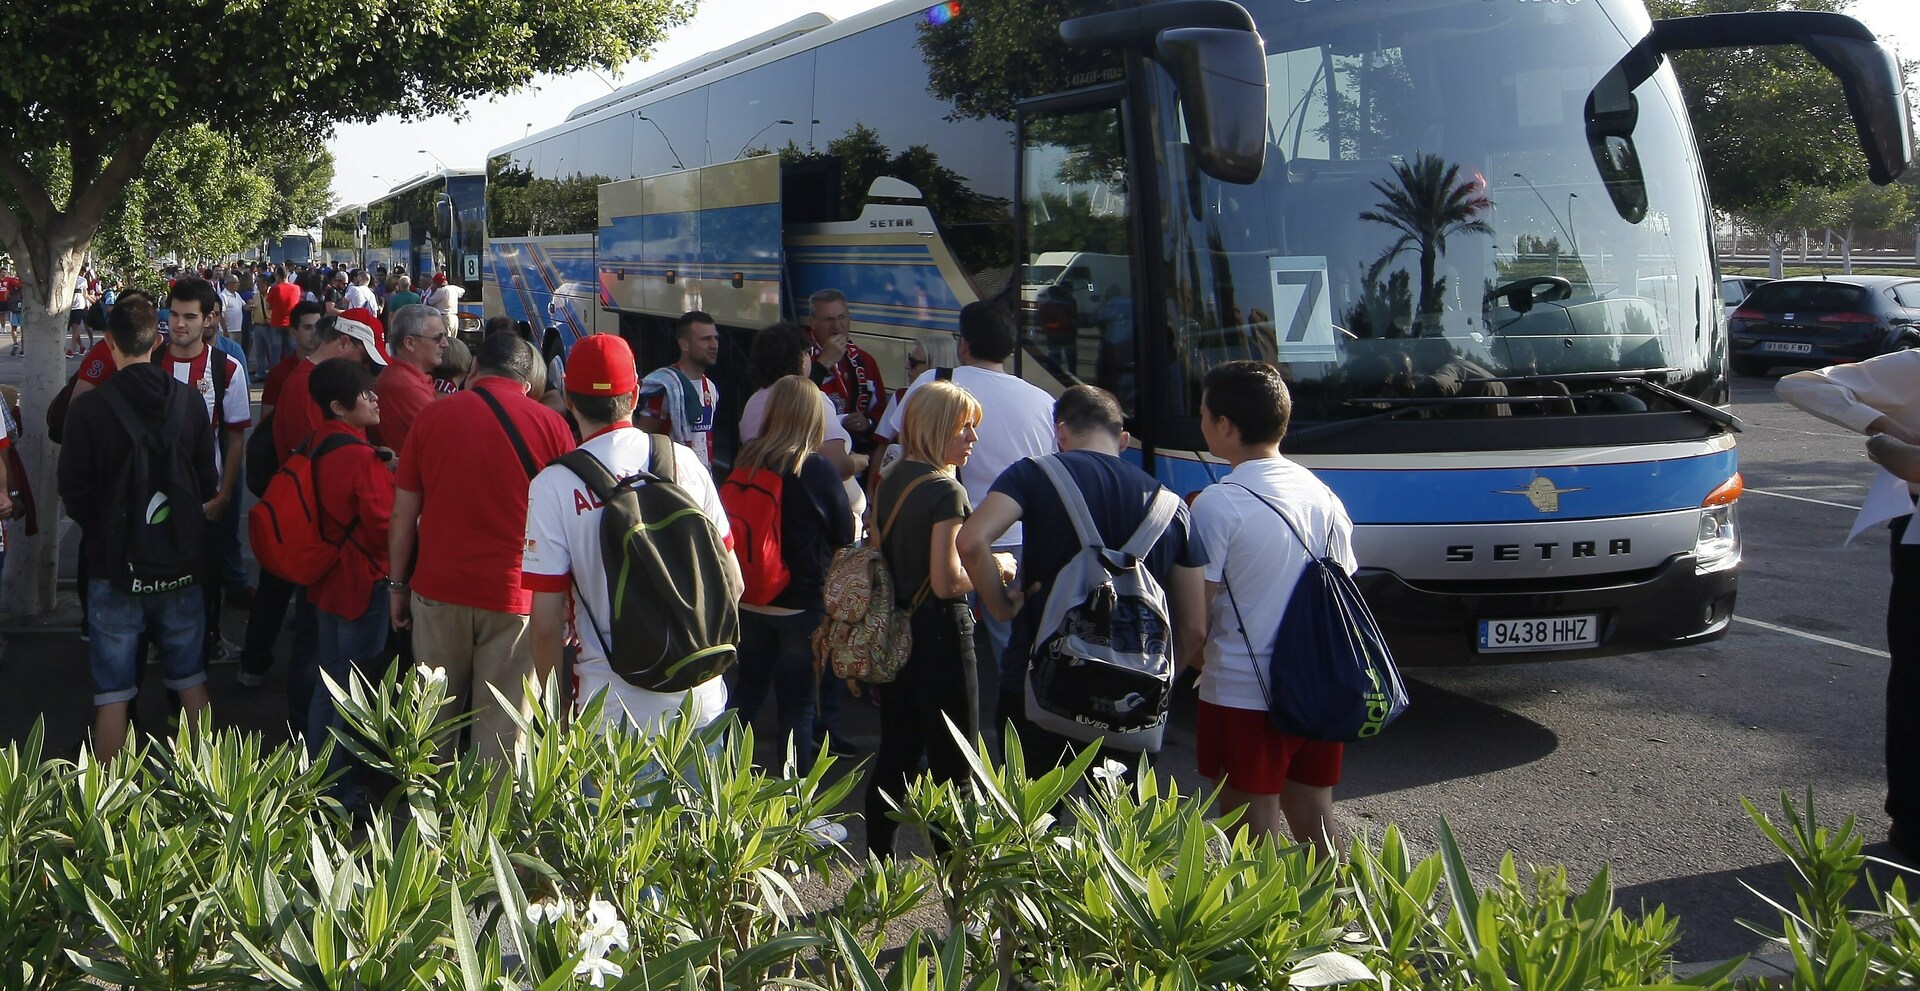 Agotadas las entradas y 10 autobuses rumbo a Barcelona